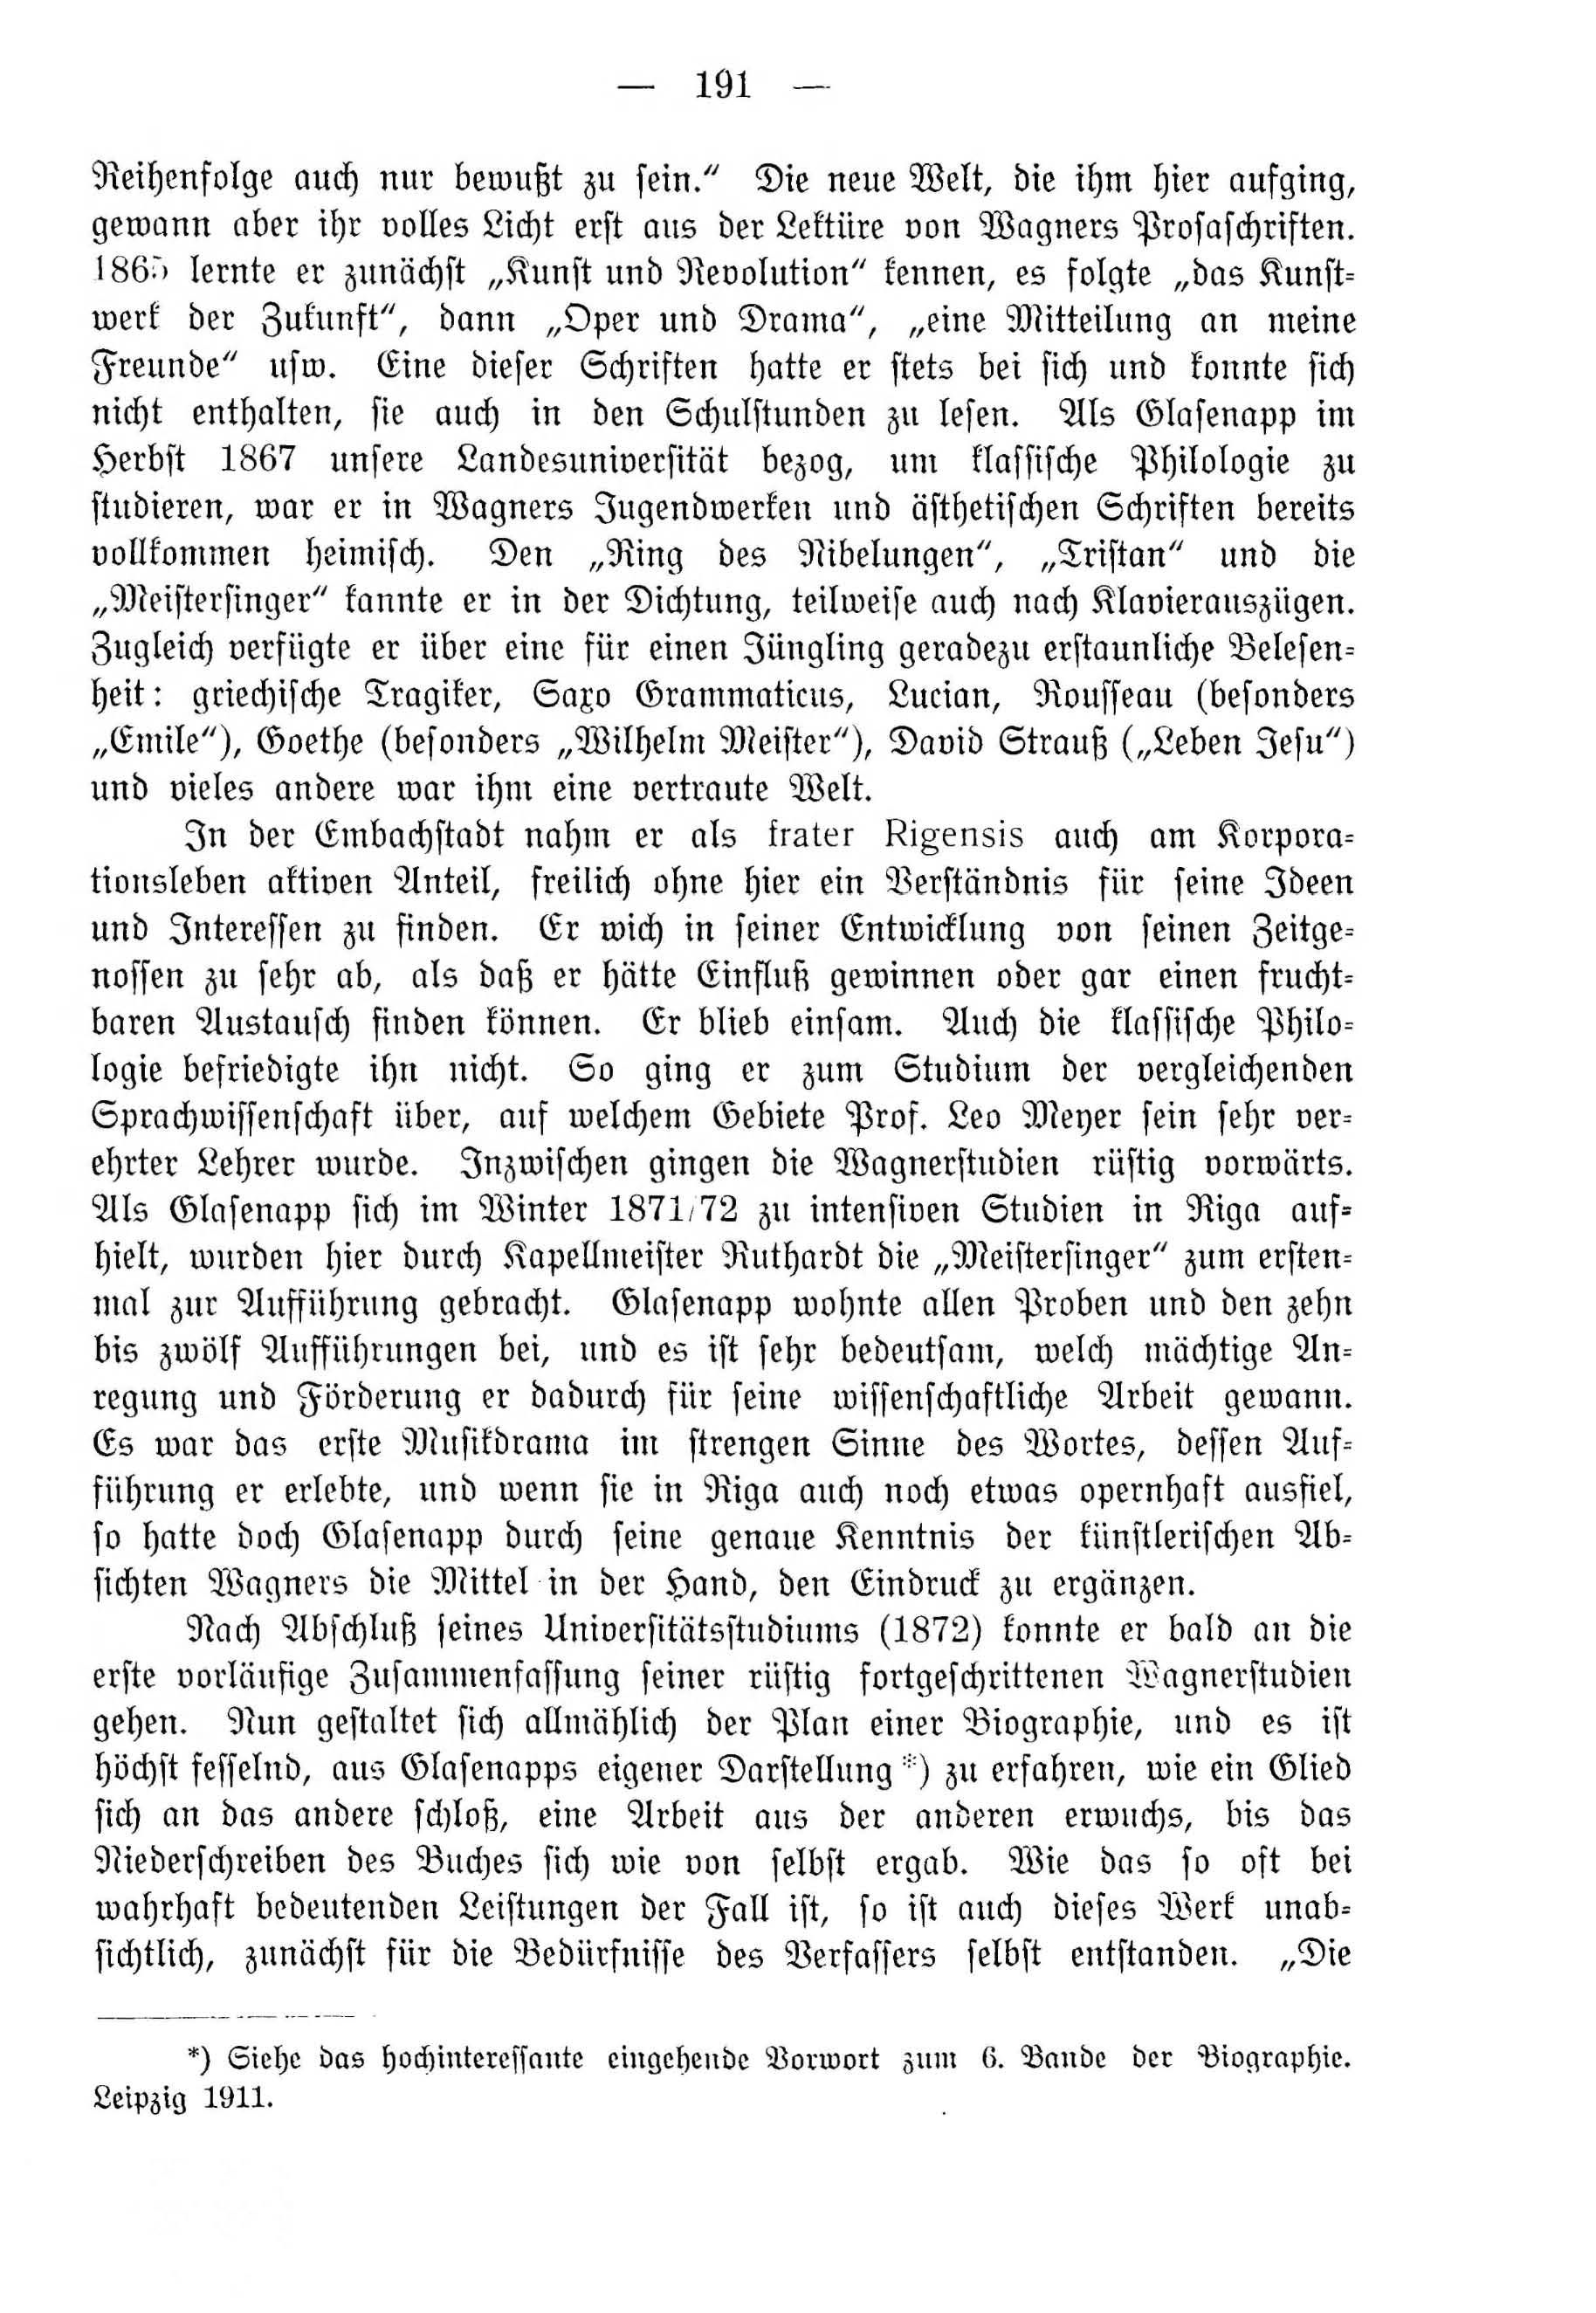 Deutsche Monatsschrift für Russland [4] (1915) | 191. (191) Основной текст